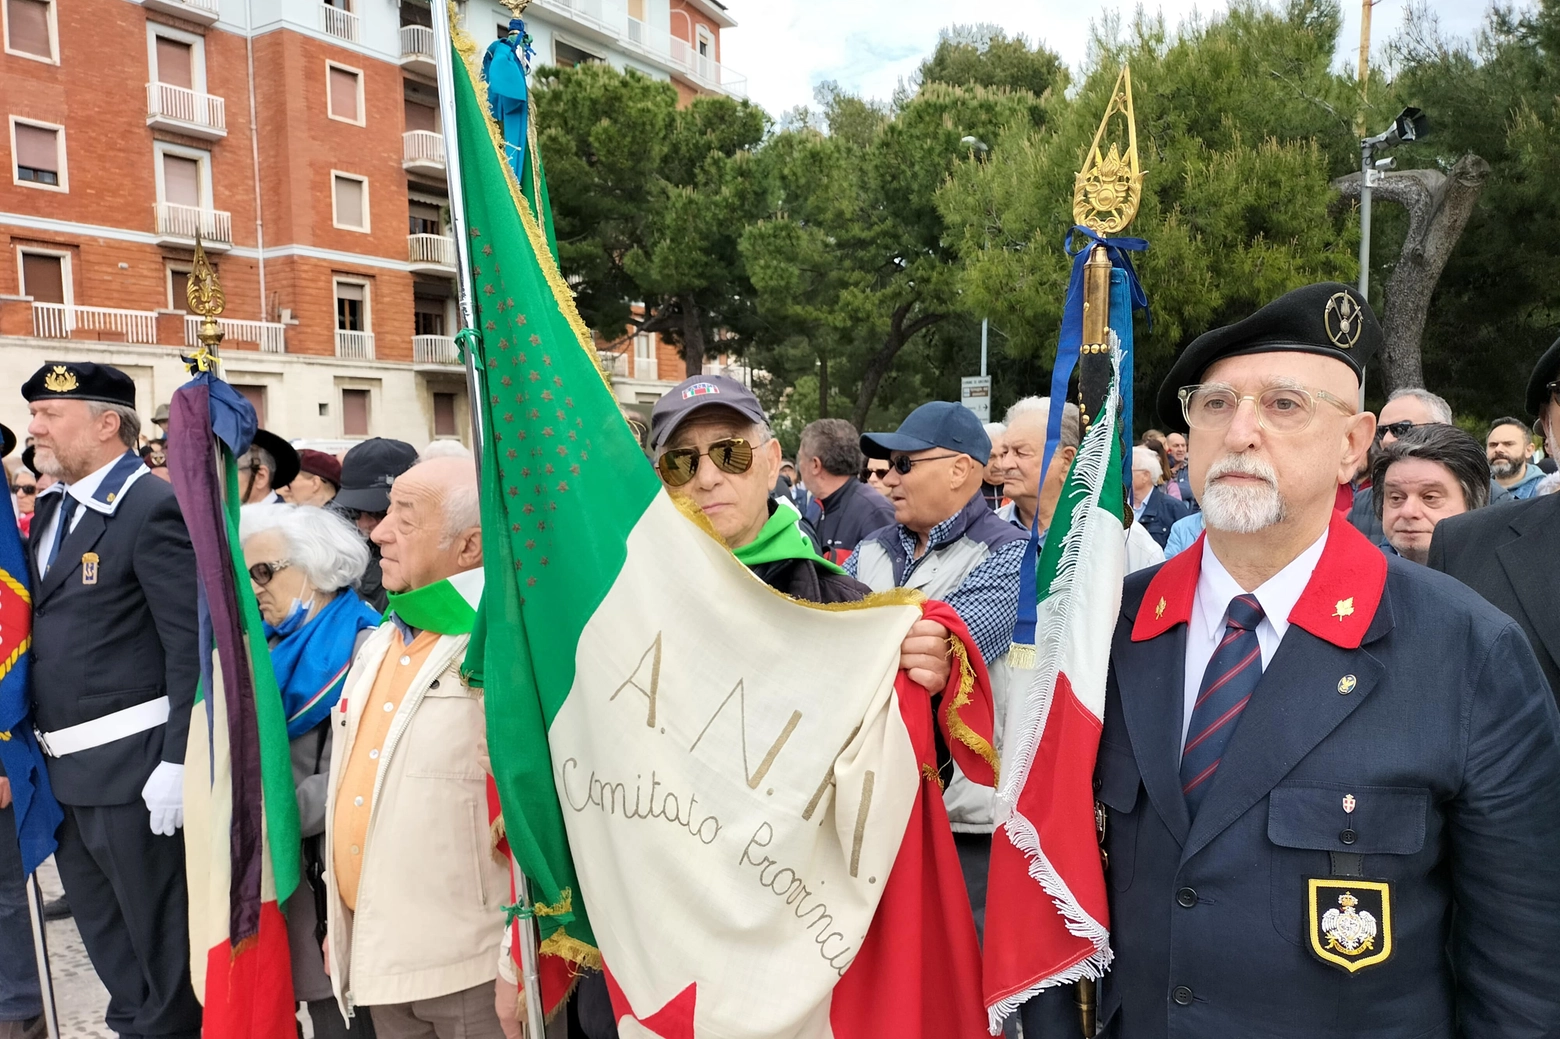 Le celebrazioni del 25 aprile ad Ancona